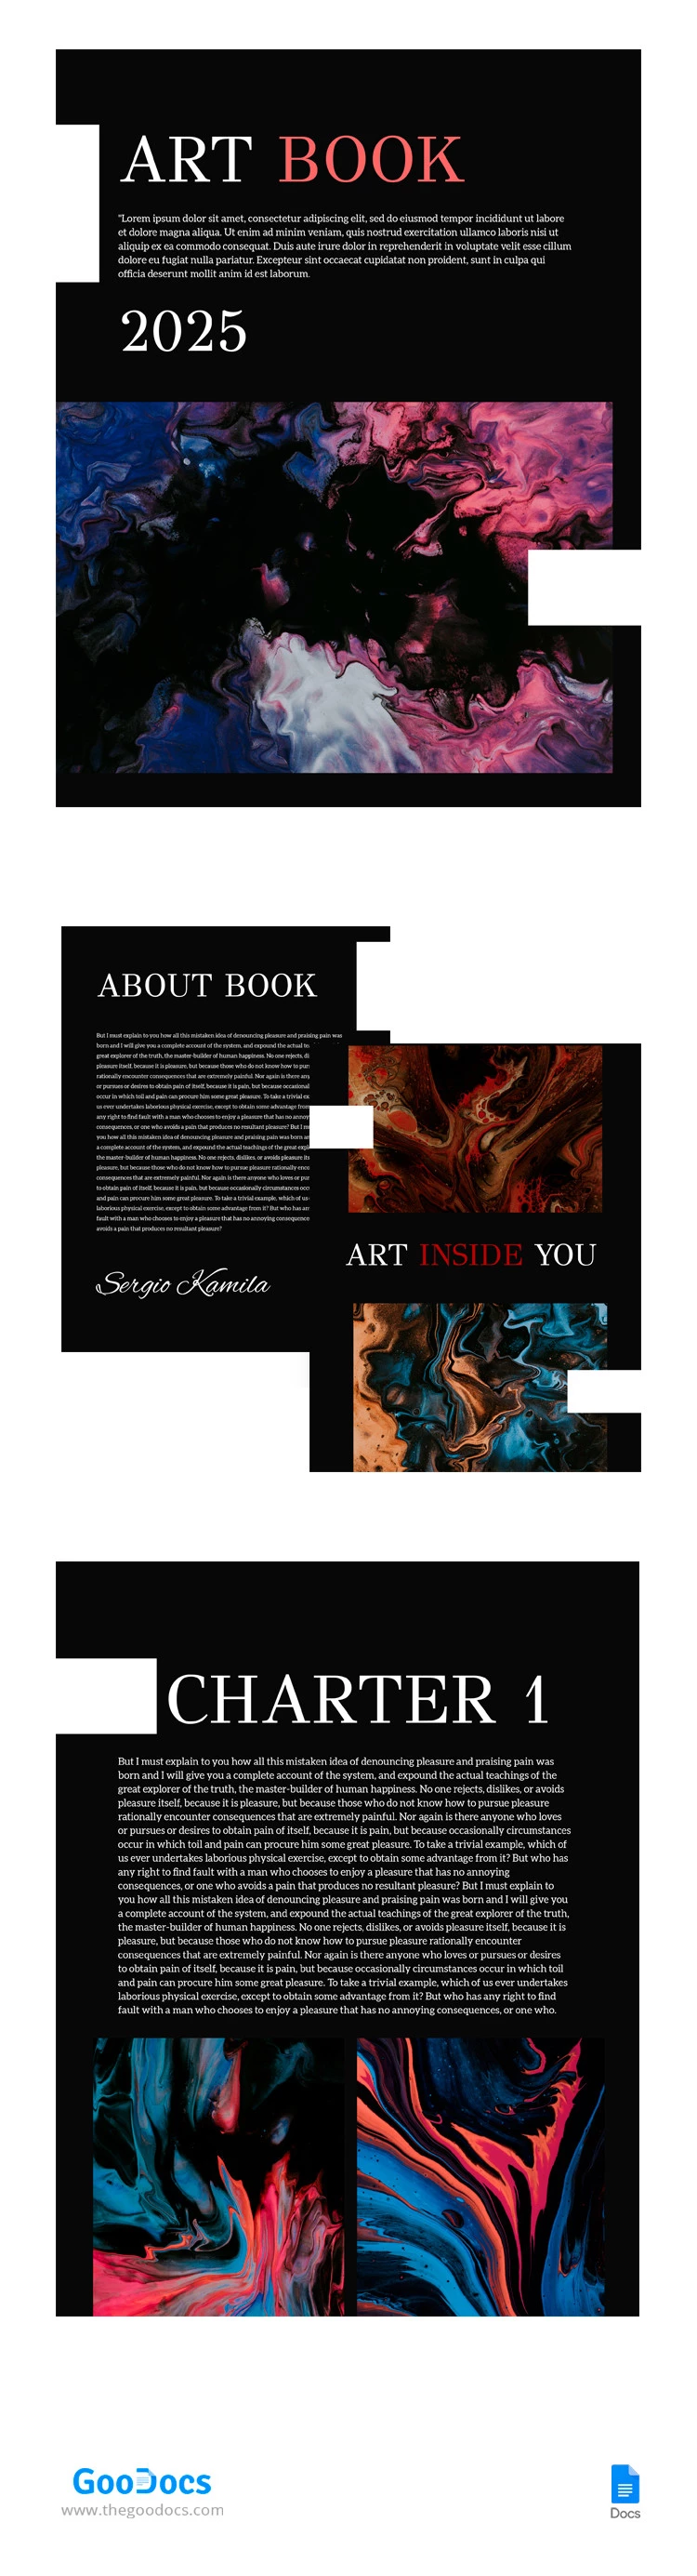 Livro de Arte Abstrata - free Google Docs Template - 10065623